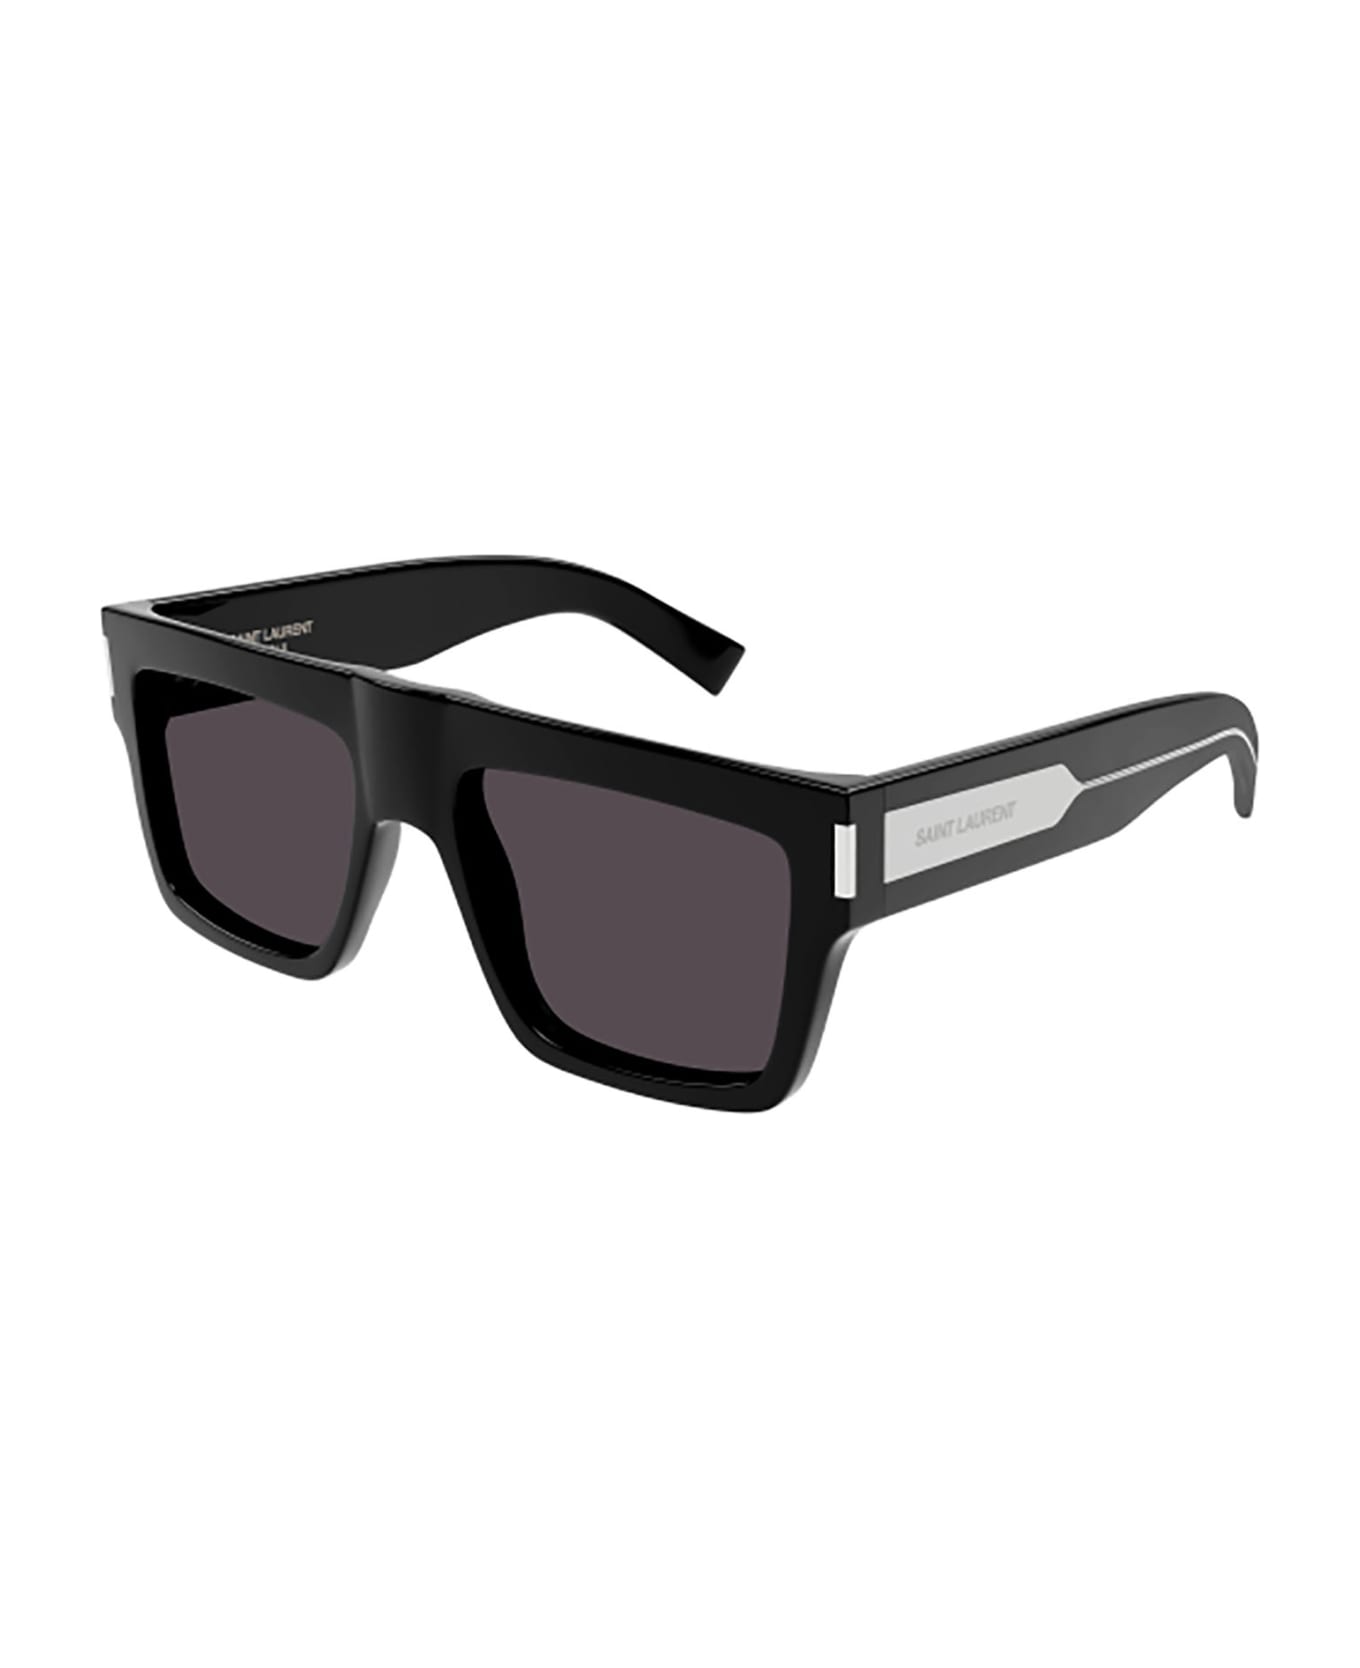 Saint Laurent Eyewear SL 628 Sunglasses - Black Crystal Black